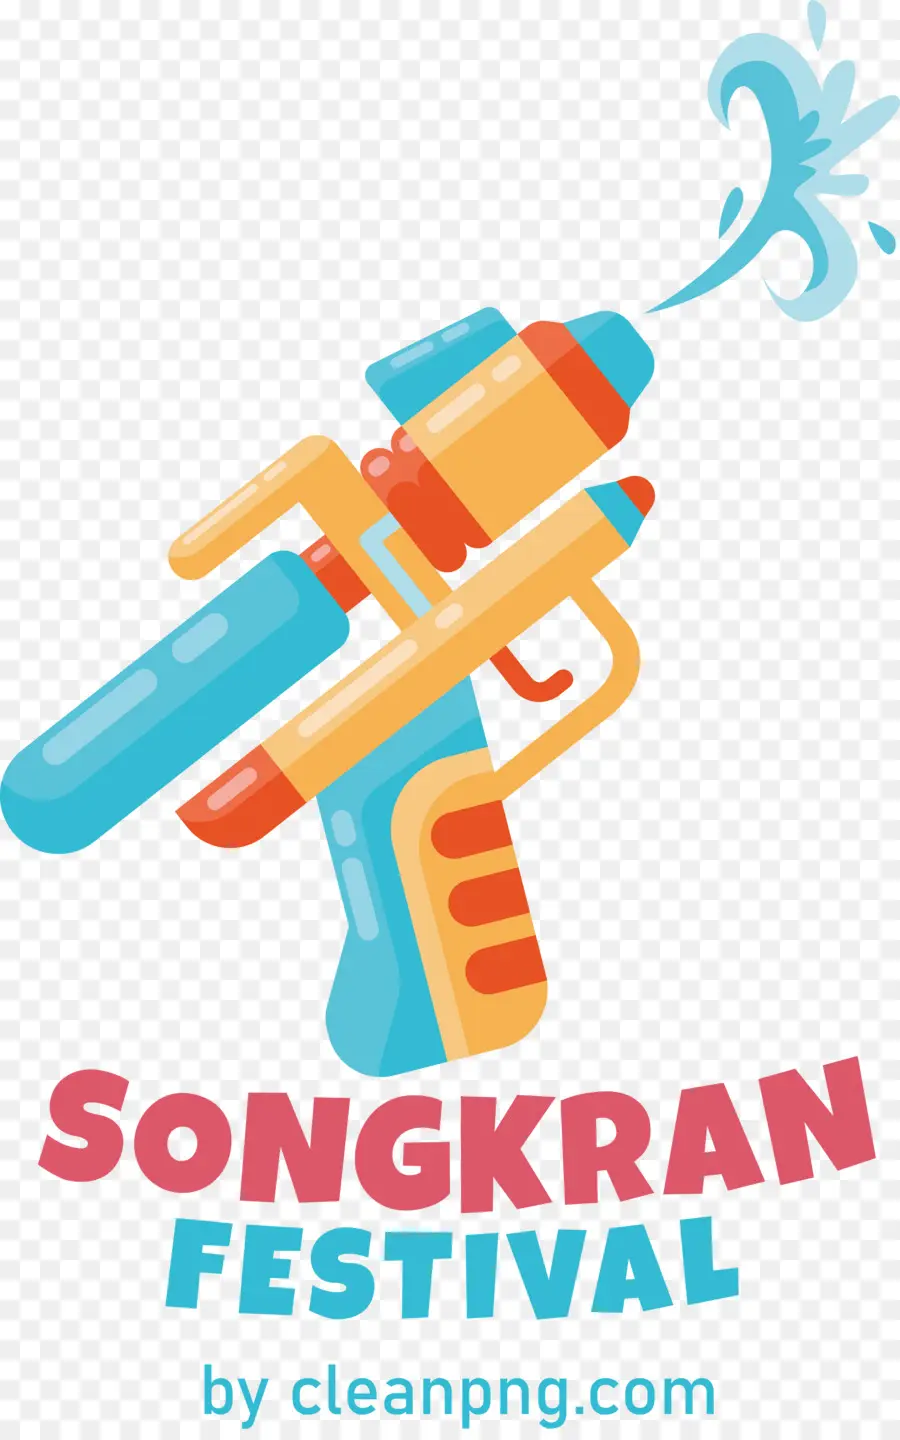 Songkran Festival Water Splashing Festival - 